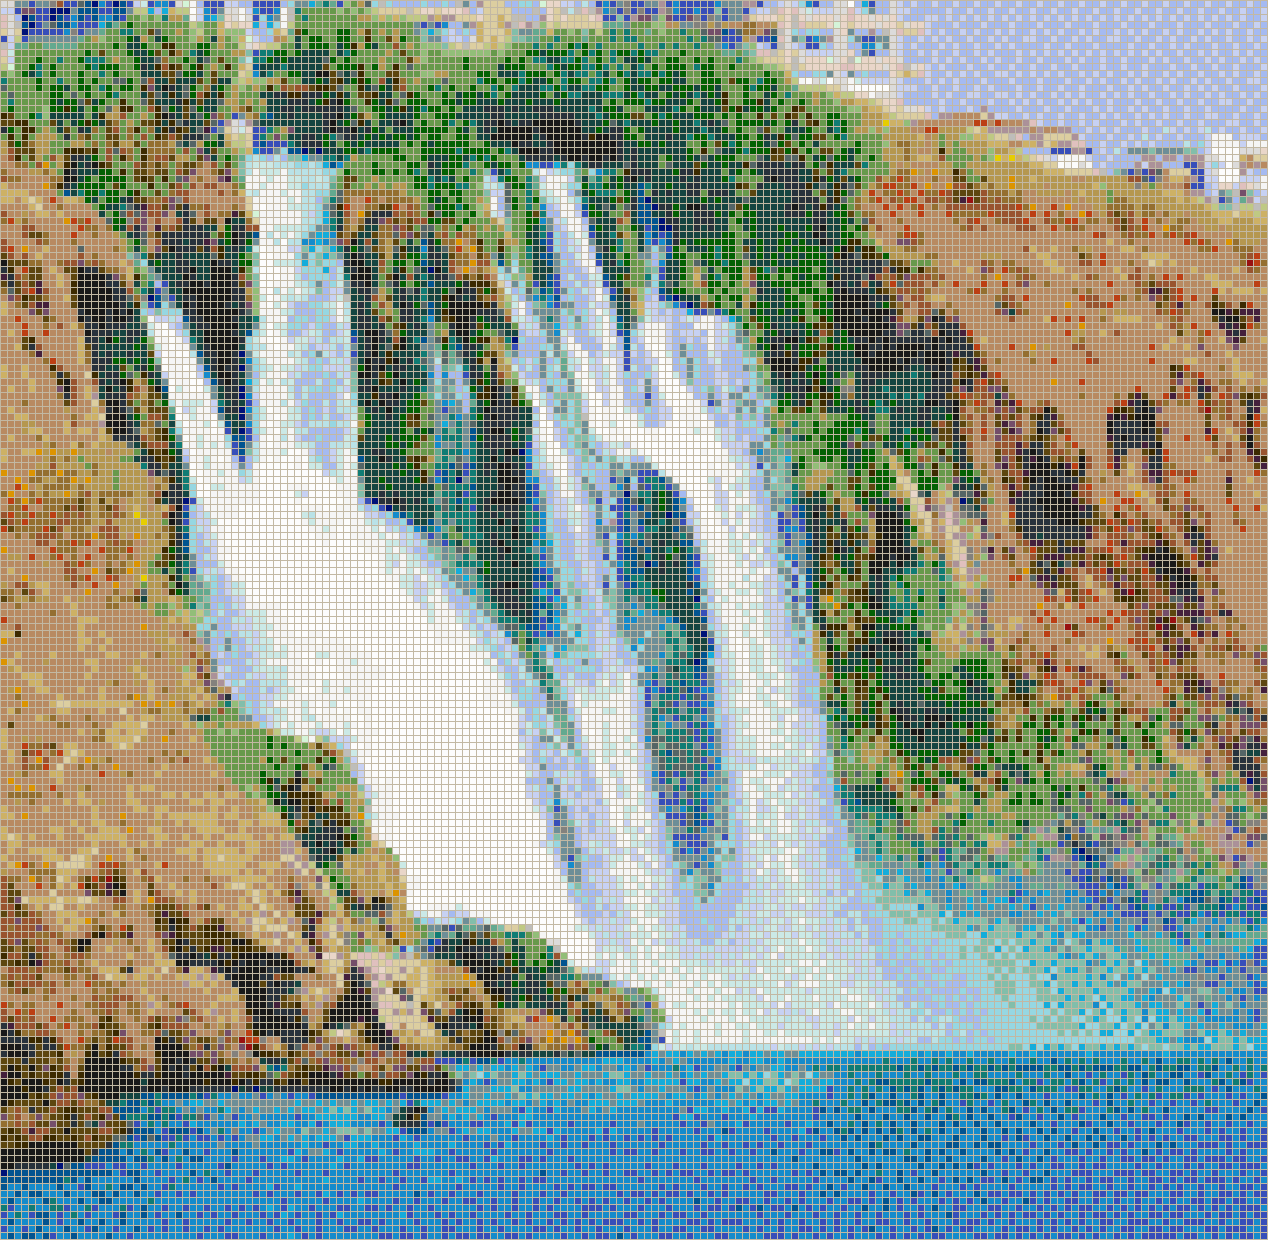 Duden Waterfall (Antalya, Turkey) - Mosaic Tile Picture Art